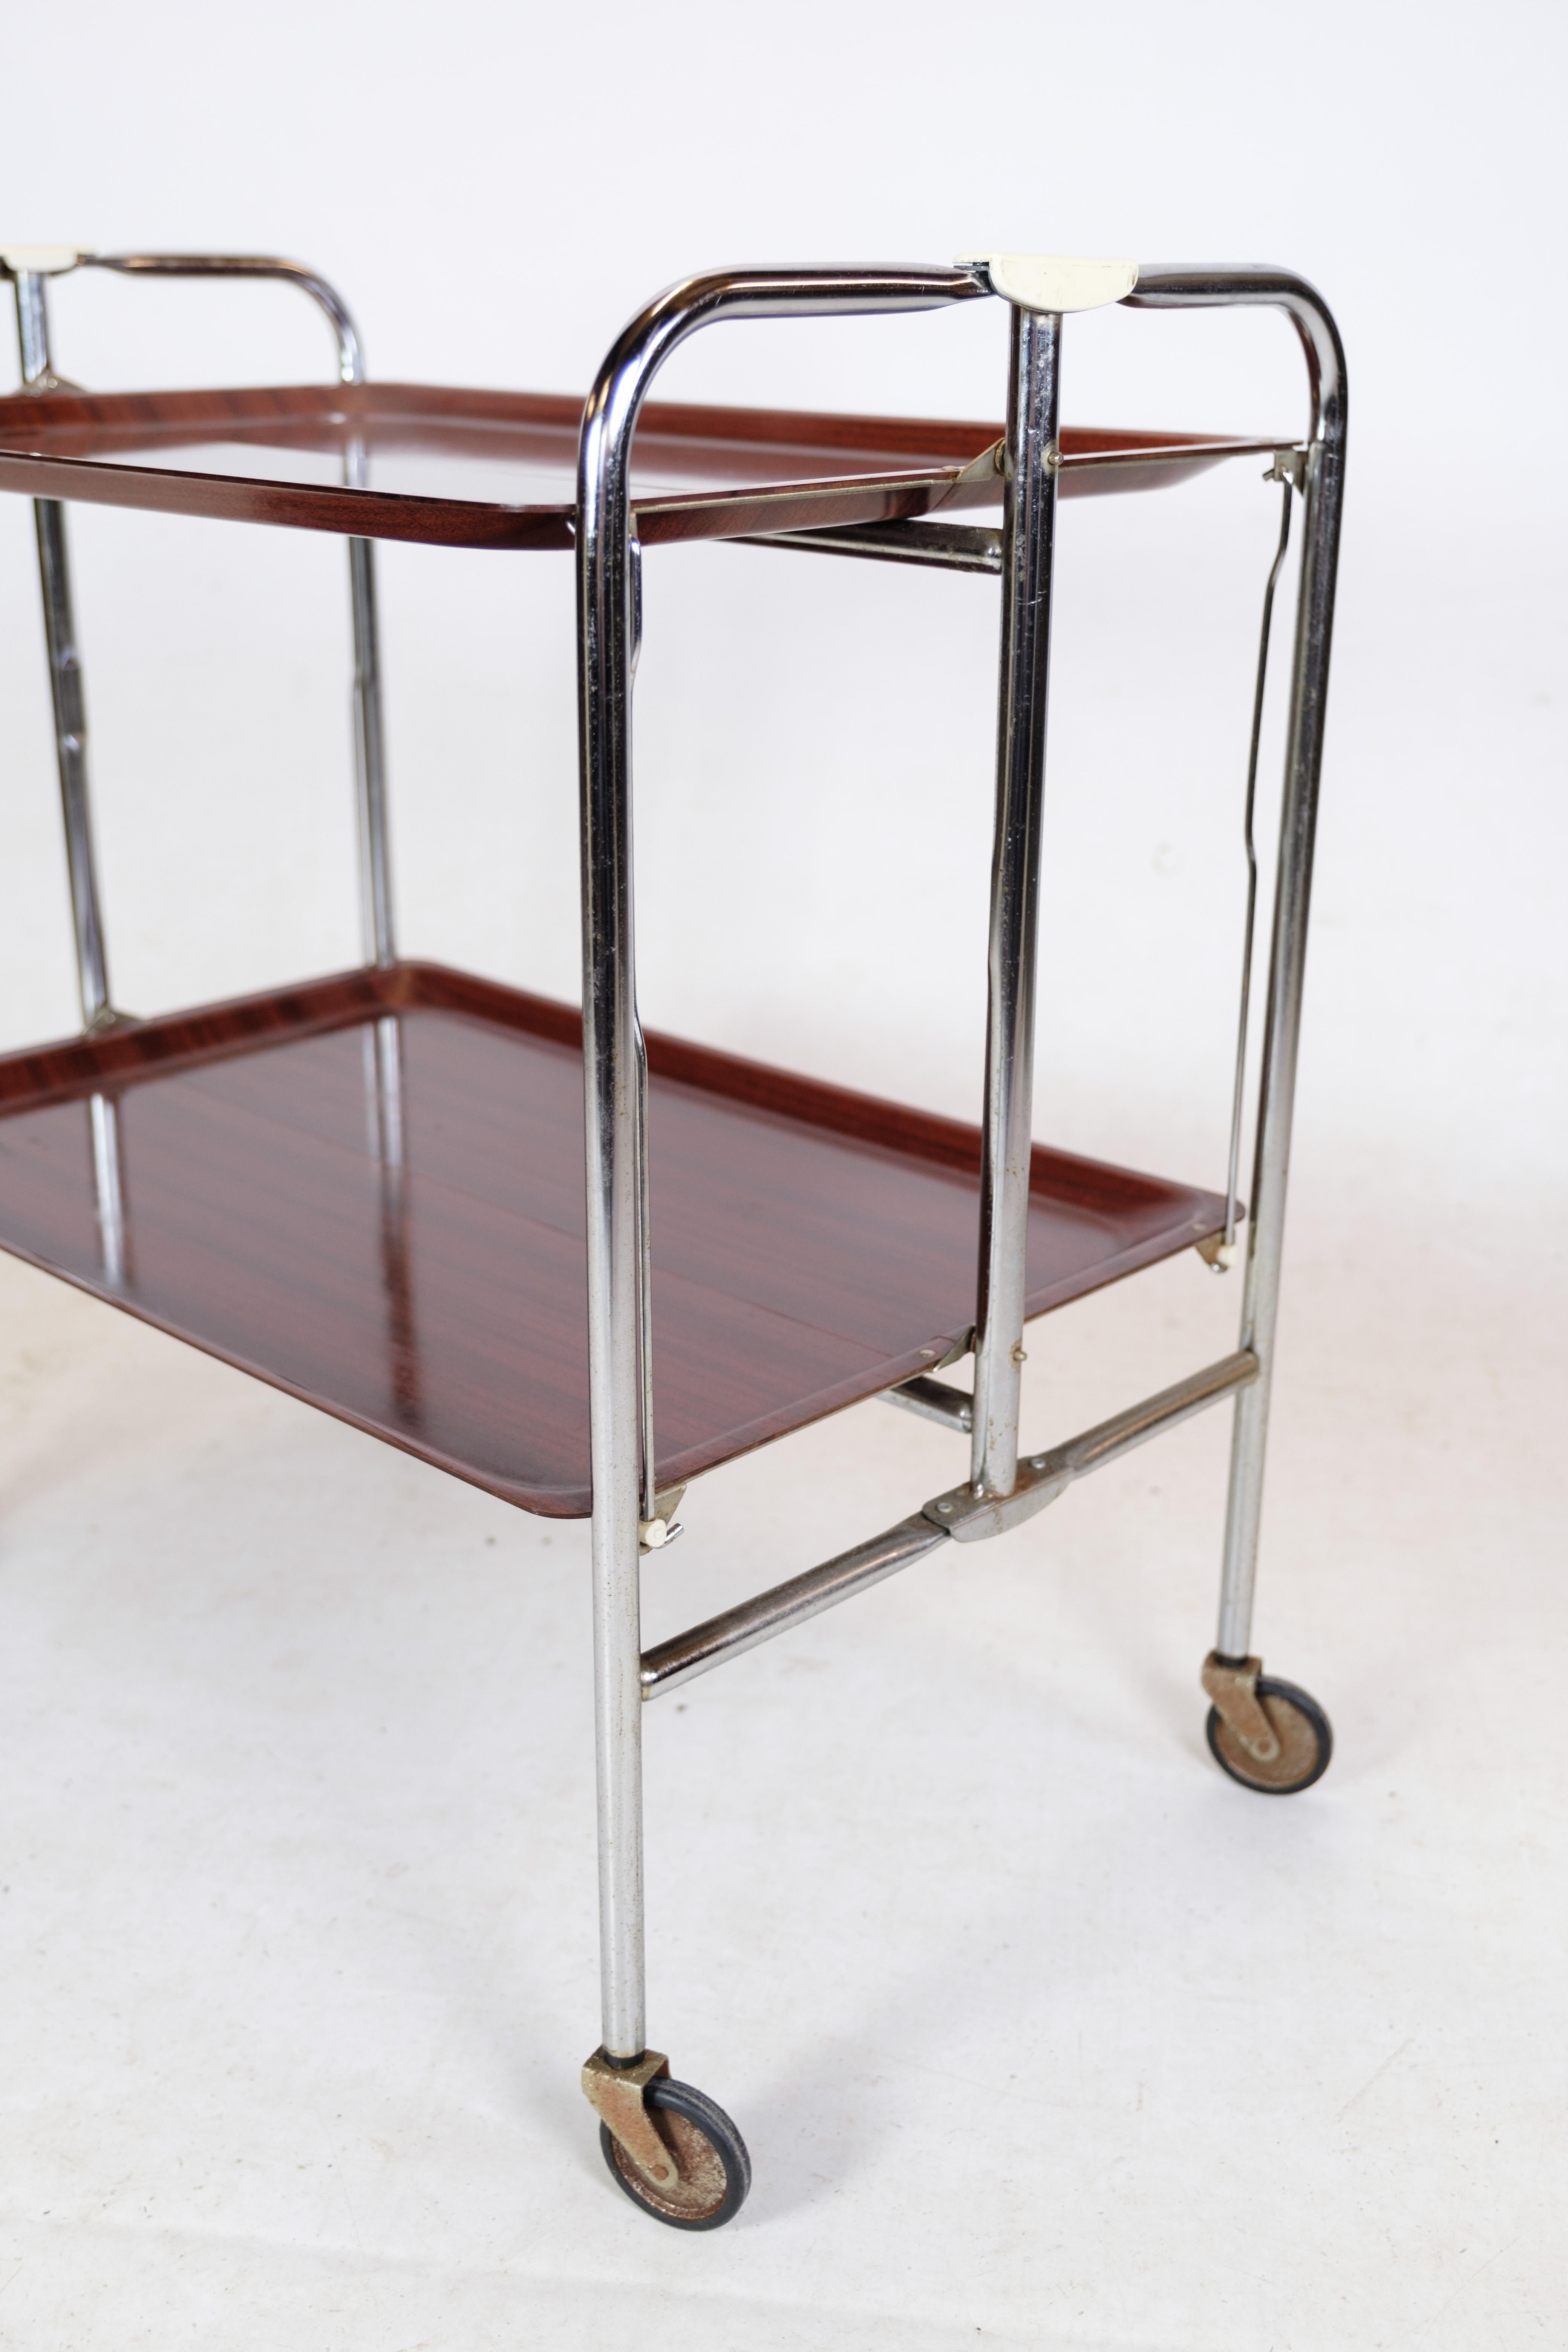 Rollbarer Tisch mit Mahogni-Imitat-Oberfläche, verchromtem Metallgestell und Originalrollen.
Maße in cm: H:68 B:66 T:41